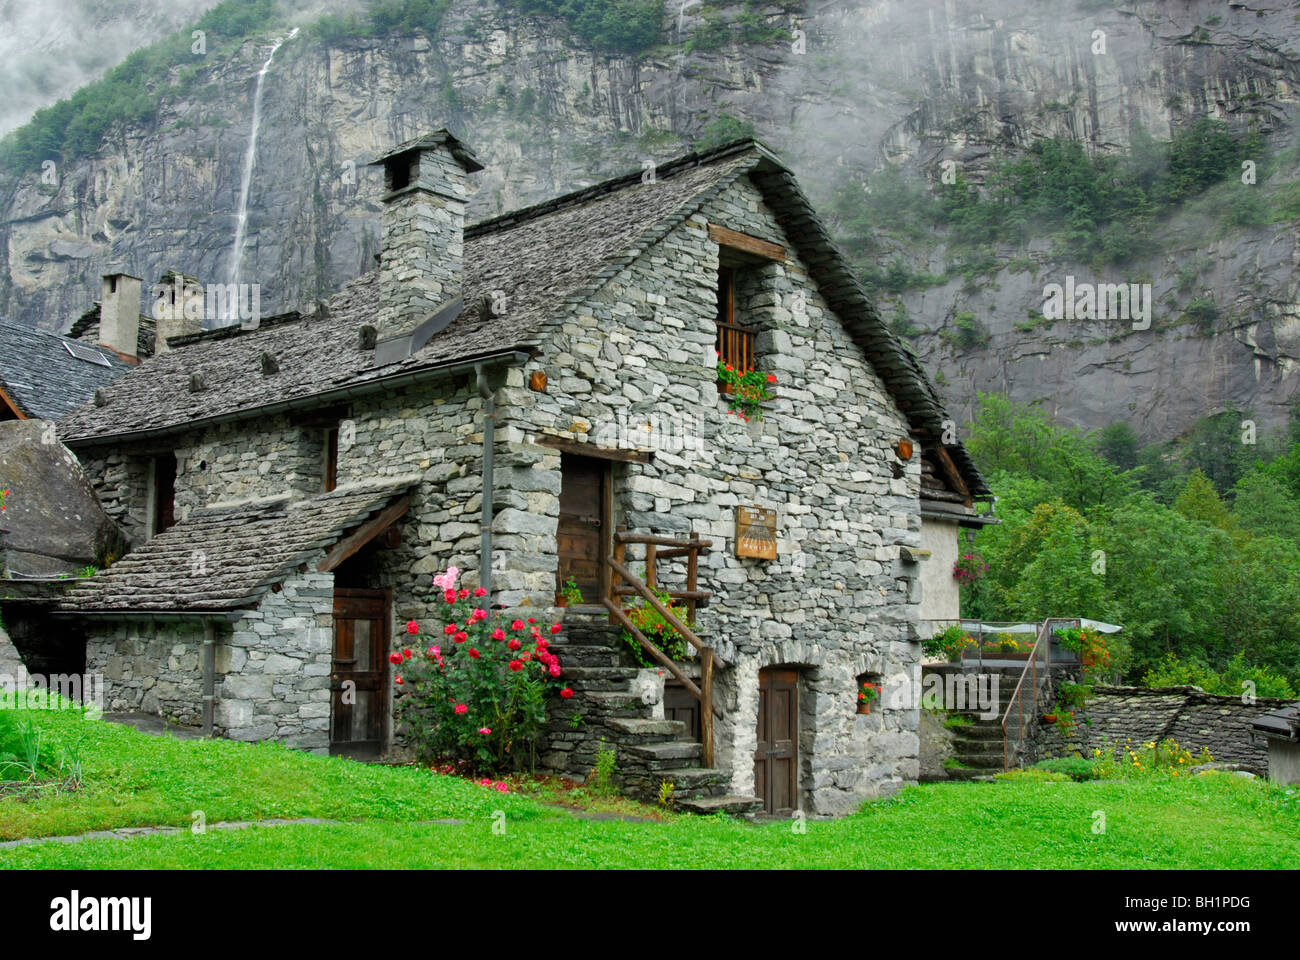 Steinhaus mit Blumen Dekoration, Sonlerto, Tessin, Schweiz Stockfotografie  - Alamy